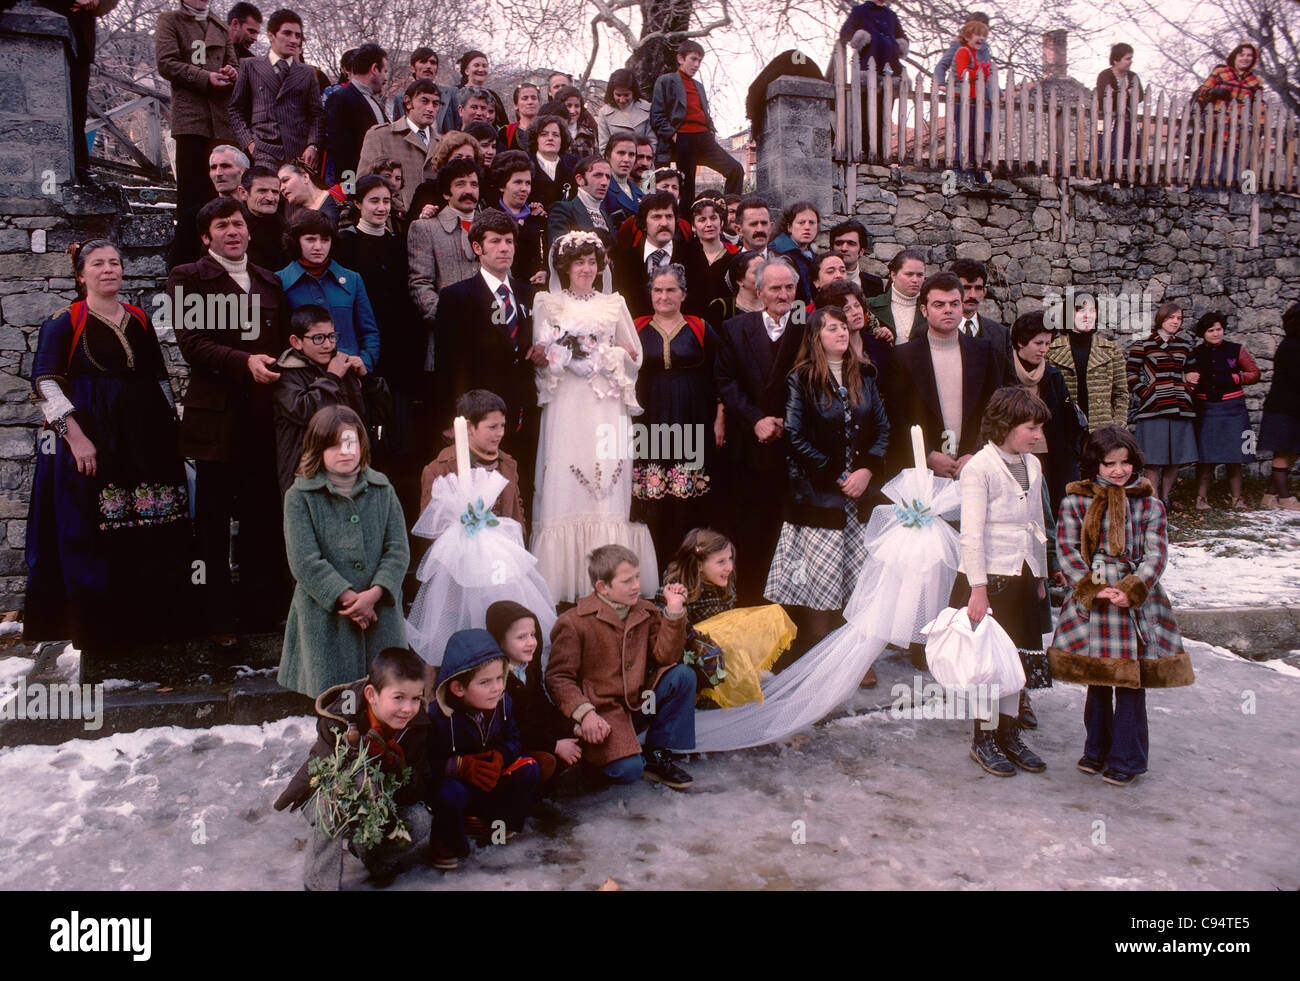 La famille étendue locale pose pour une photo de mariage dans la petite ville de montagne du nord de Metsovo, Grèce Banque D'Images